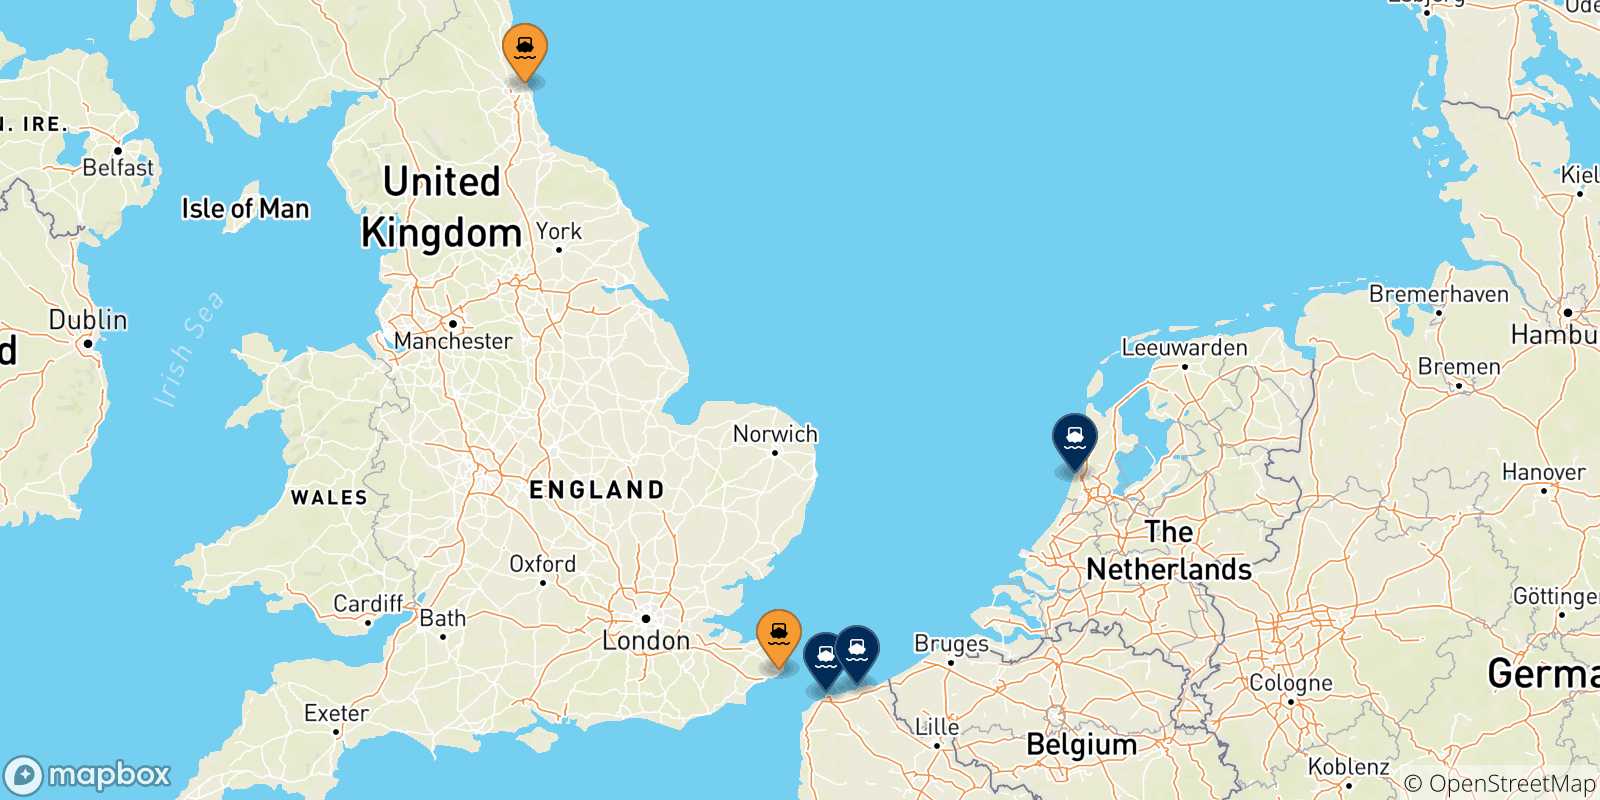 Mappa delle destinazioni raggiungibili dall' Inghilterra